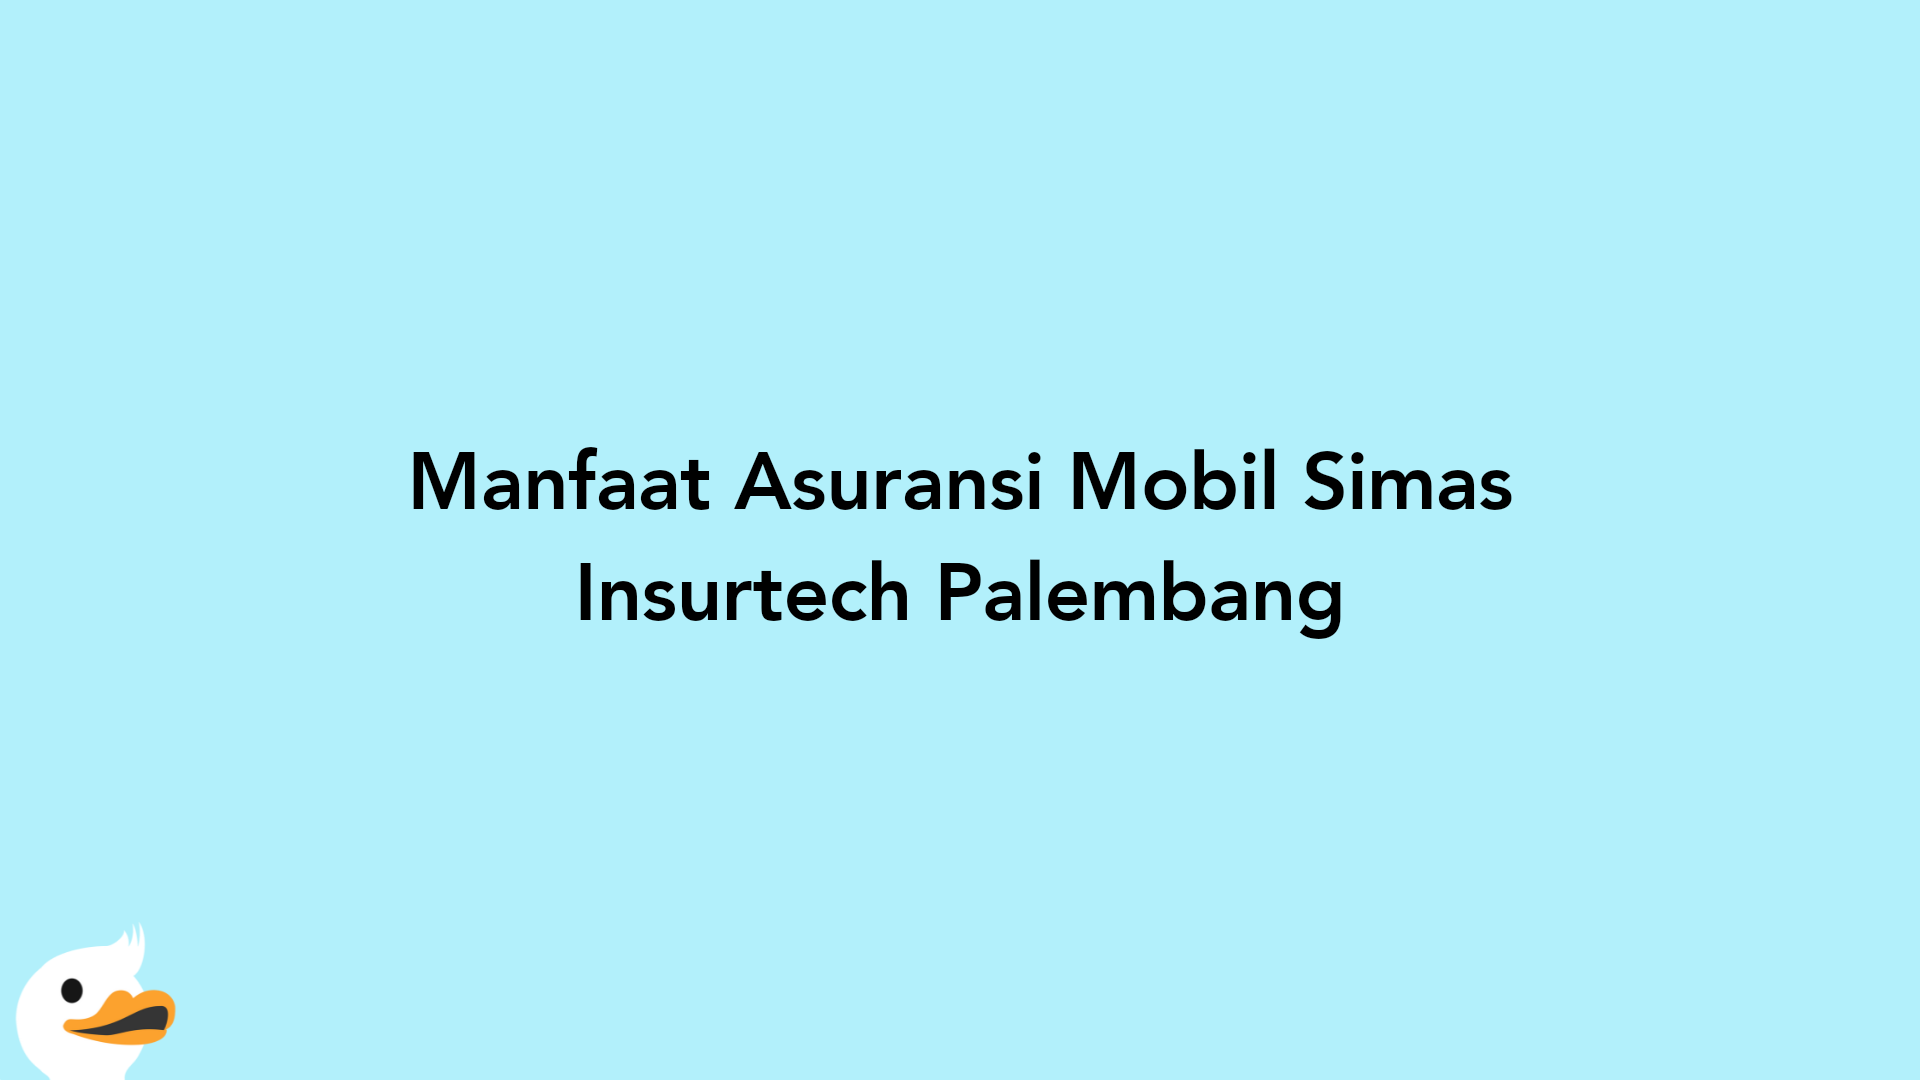 Manfaat Asuransi Mobil Simas Insurtech Palembang